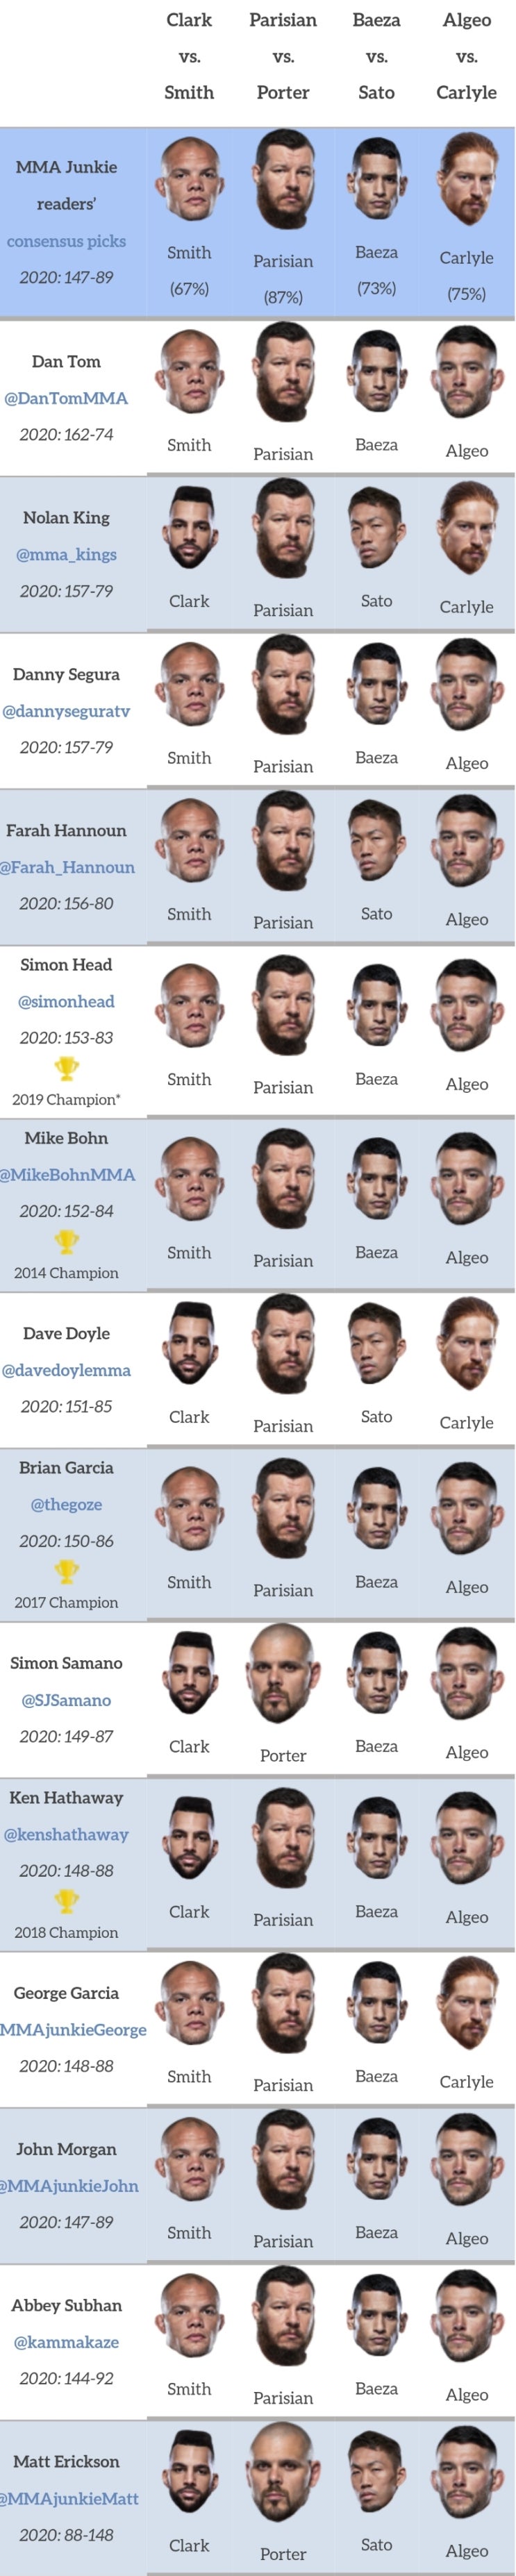 UFC 베가스 15: 스미스 vs 클락 프리뷰(미디어 예상 및 배당률)